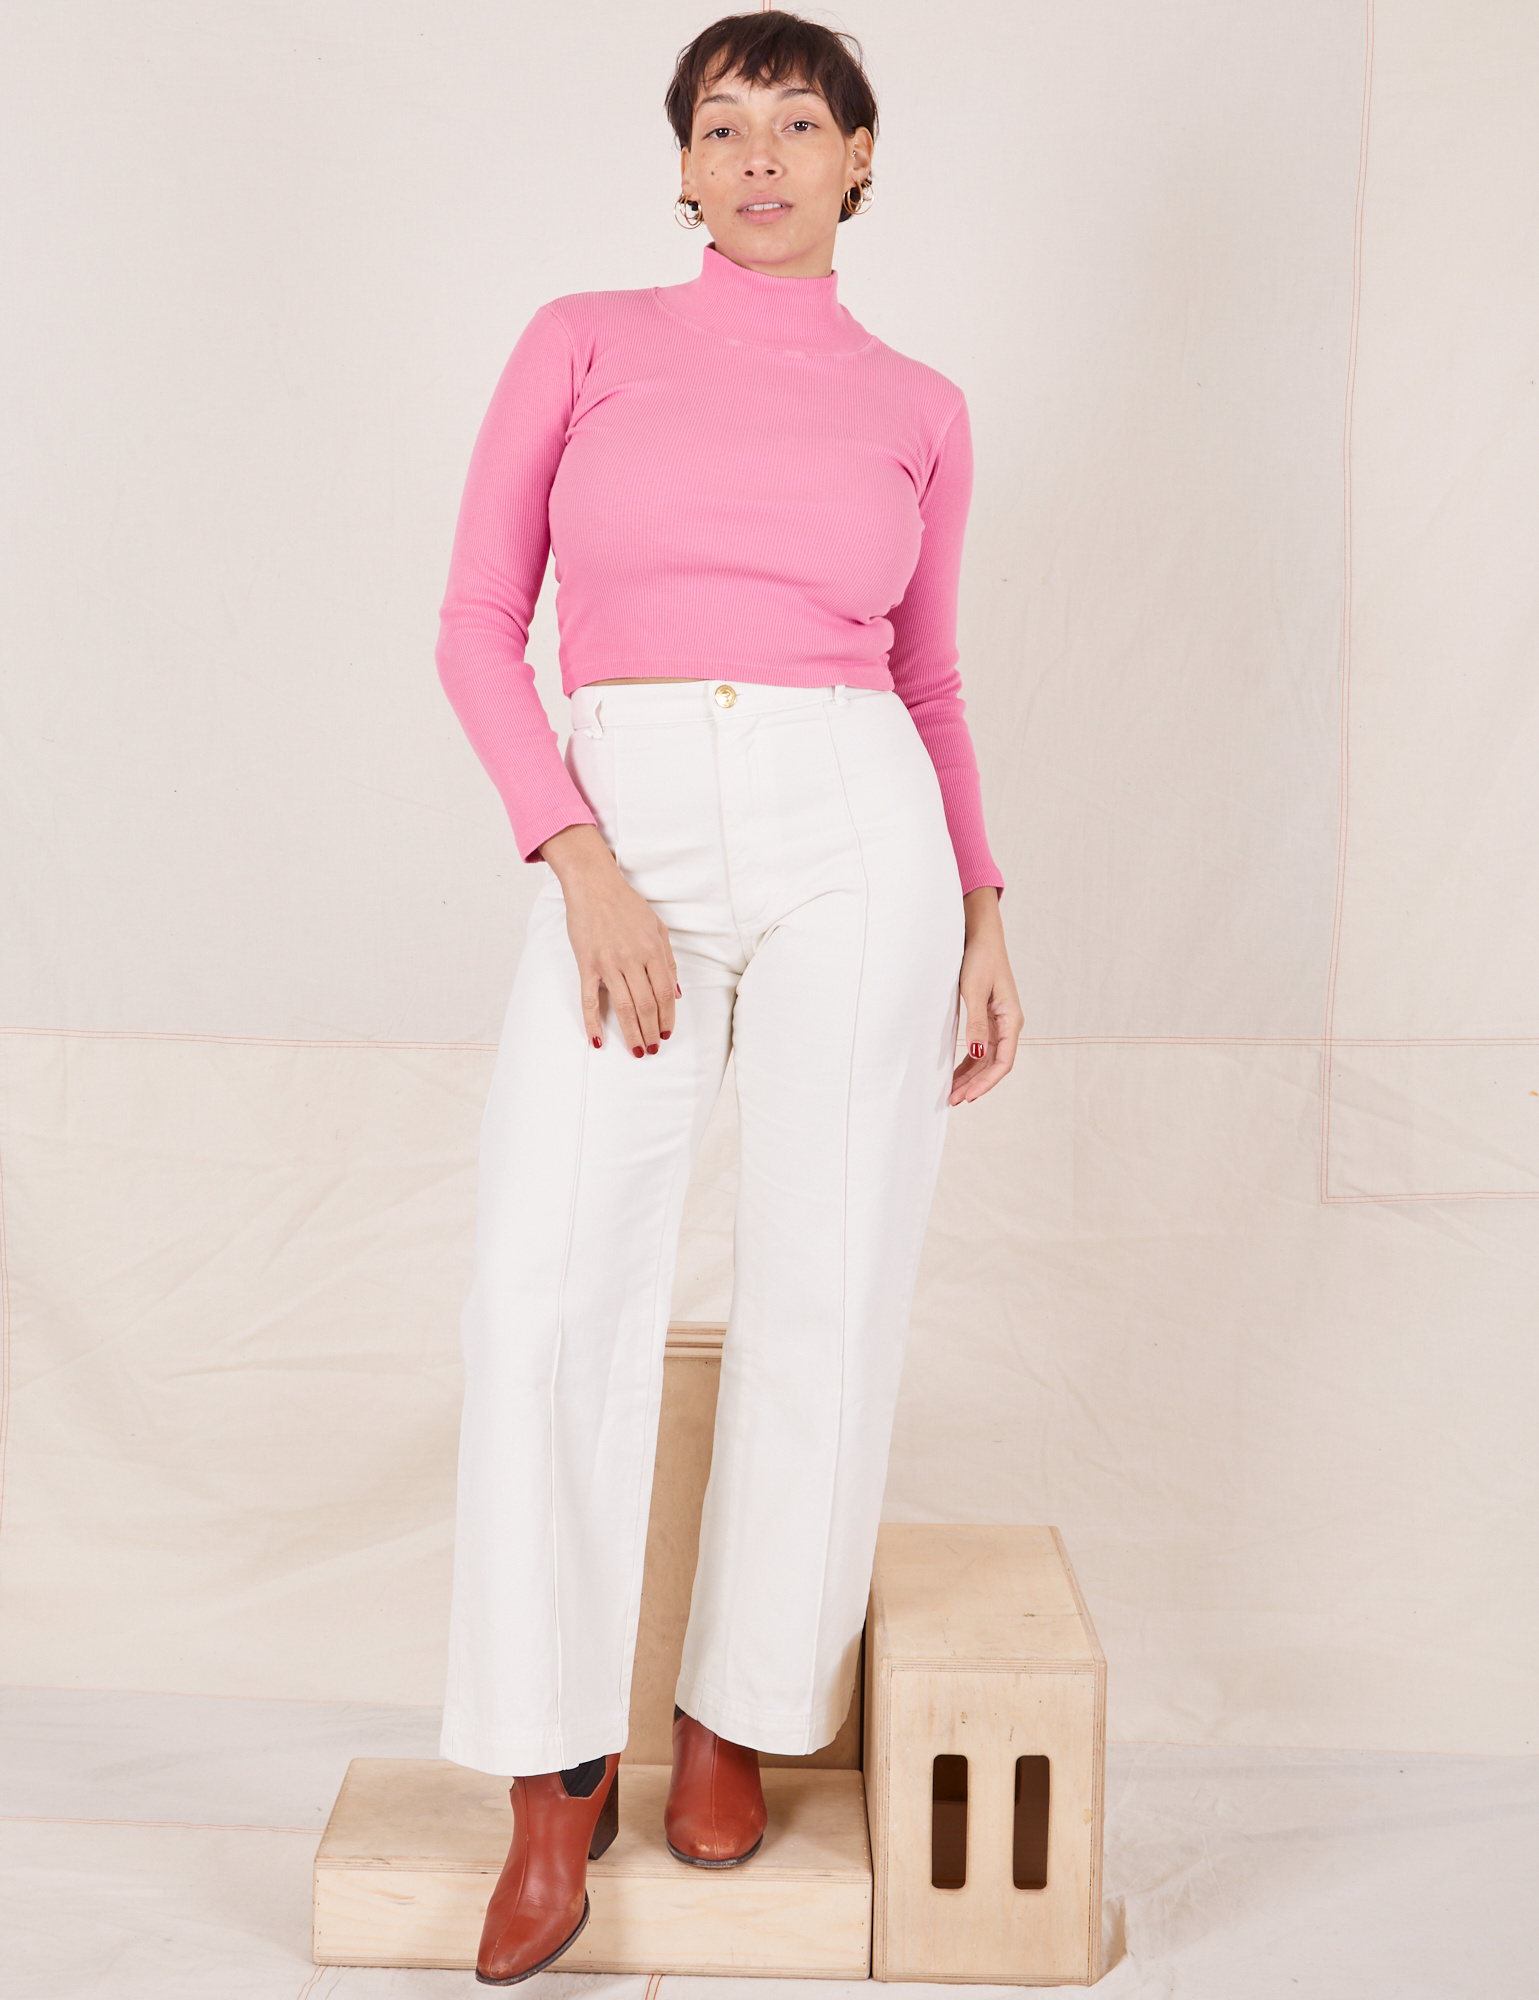 Tiara is wearing Essential Turtleneck in Bubblegum Pink and vintage tee off-white  Western Pants